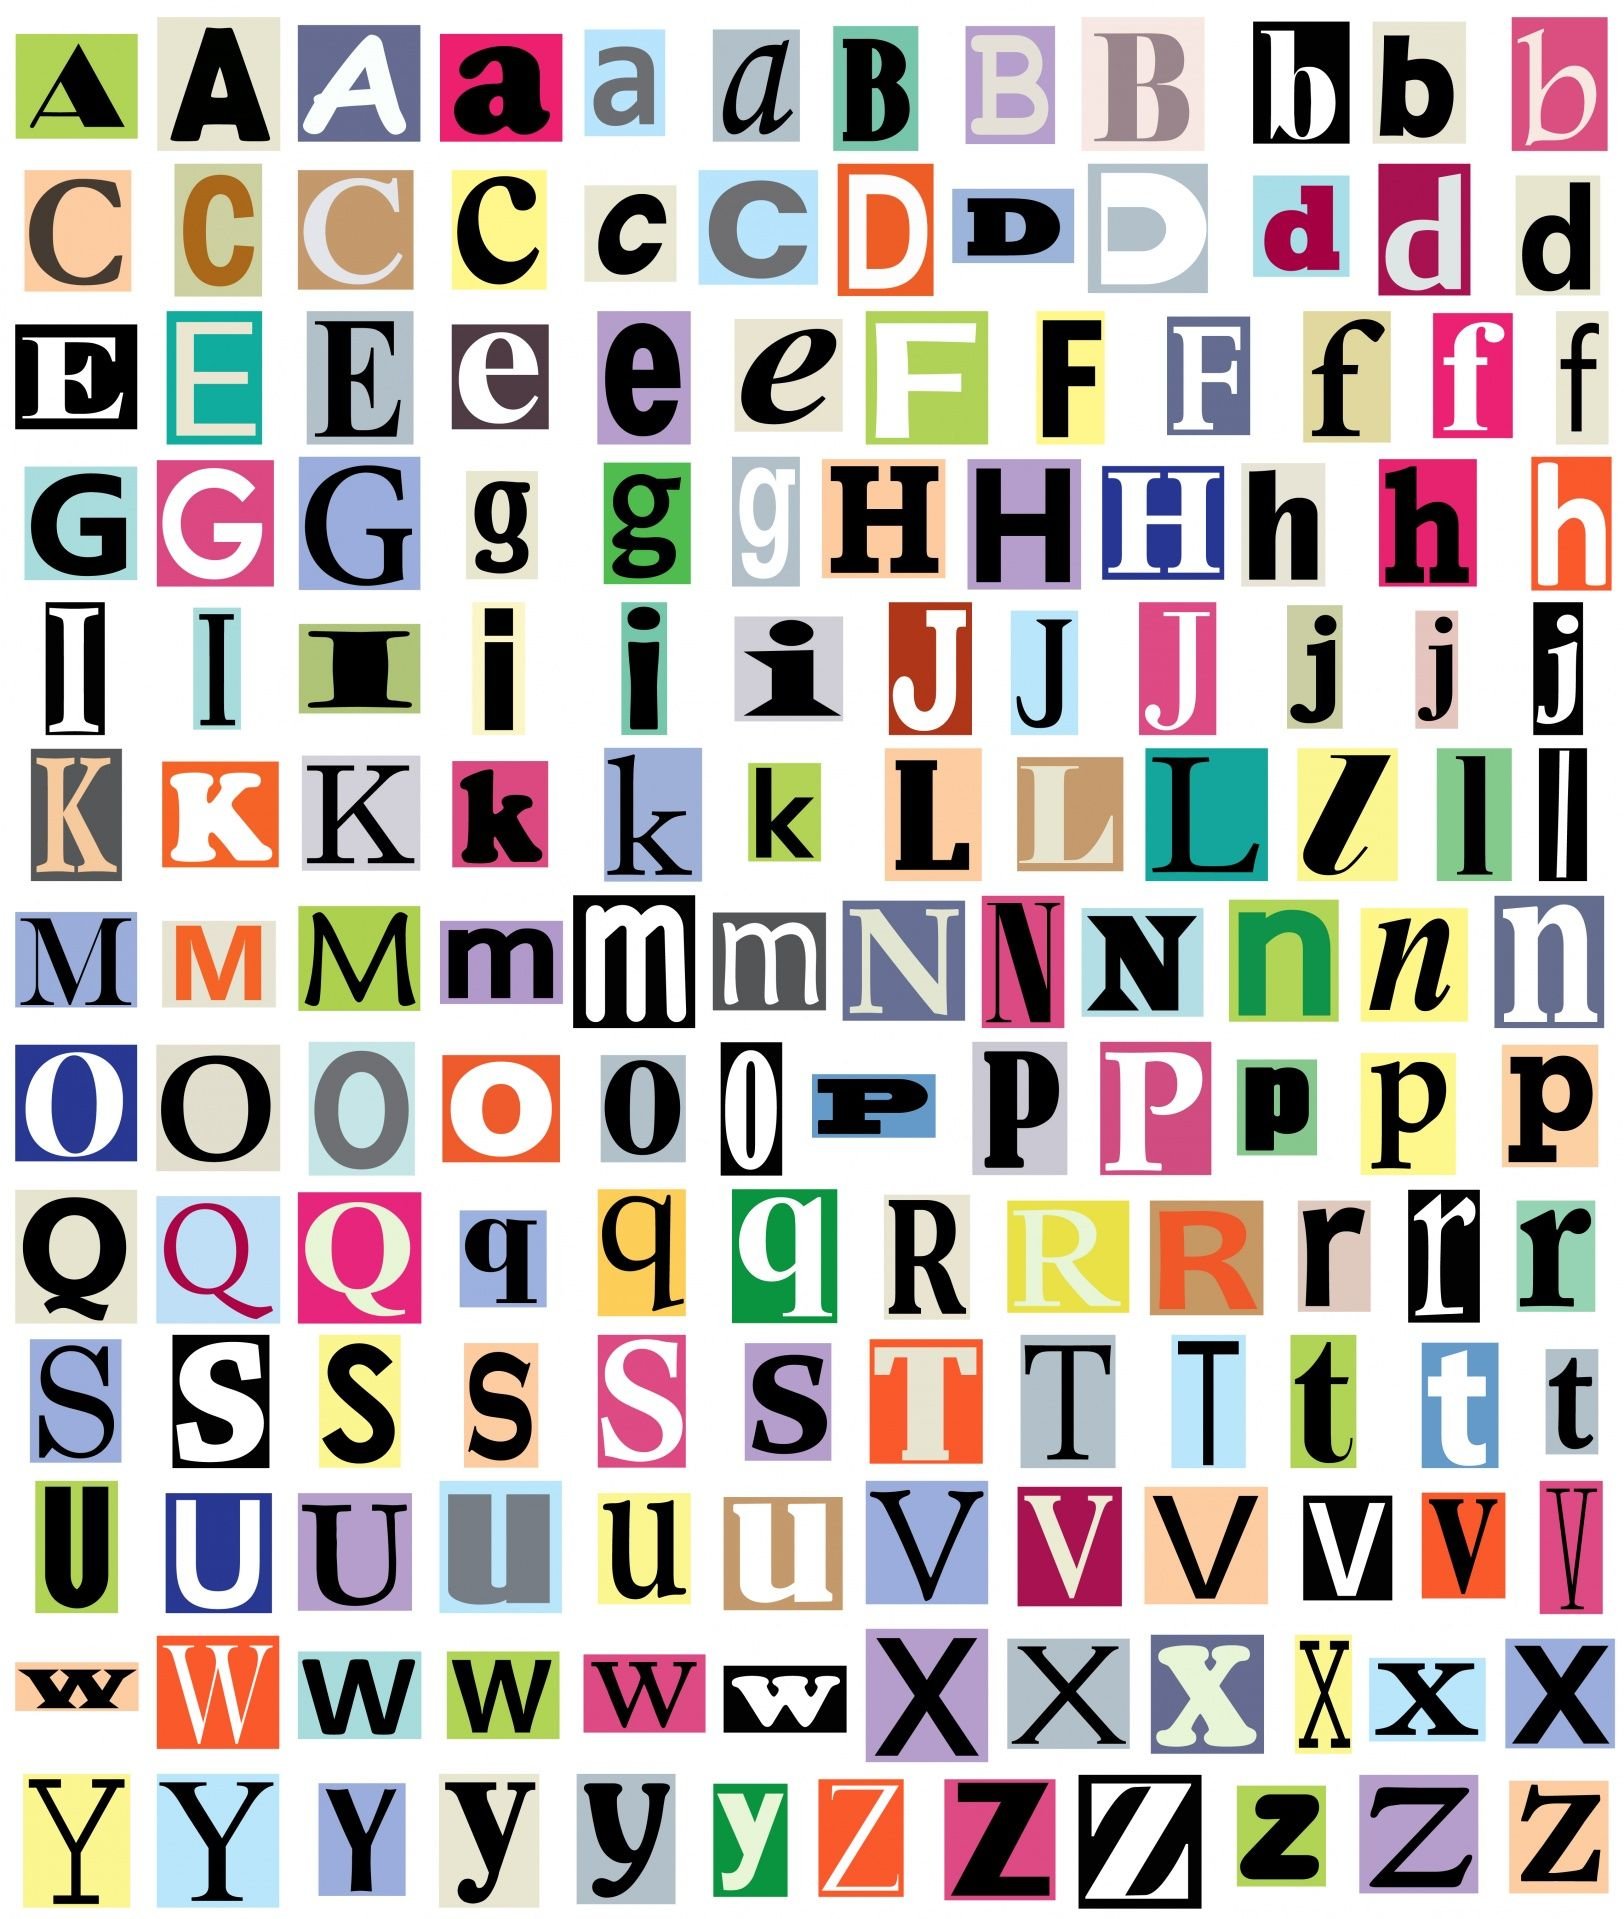 символы буквы для ников пабг фото 111